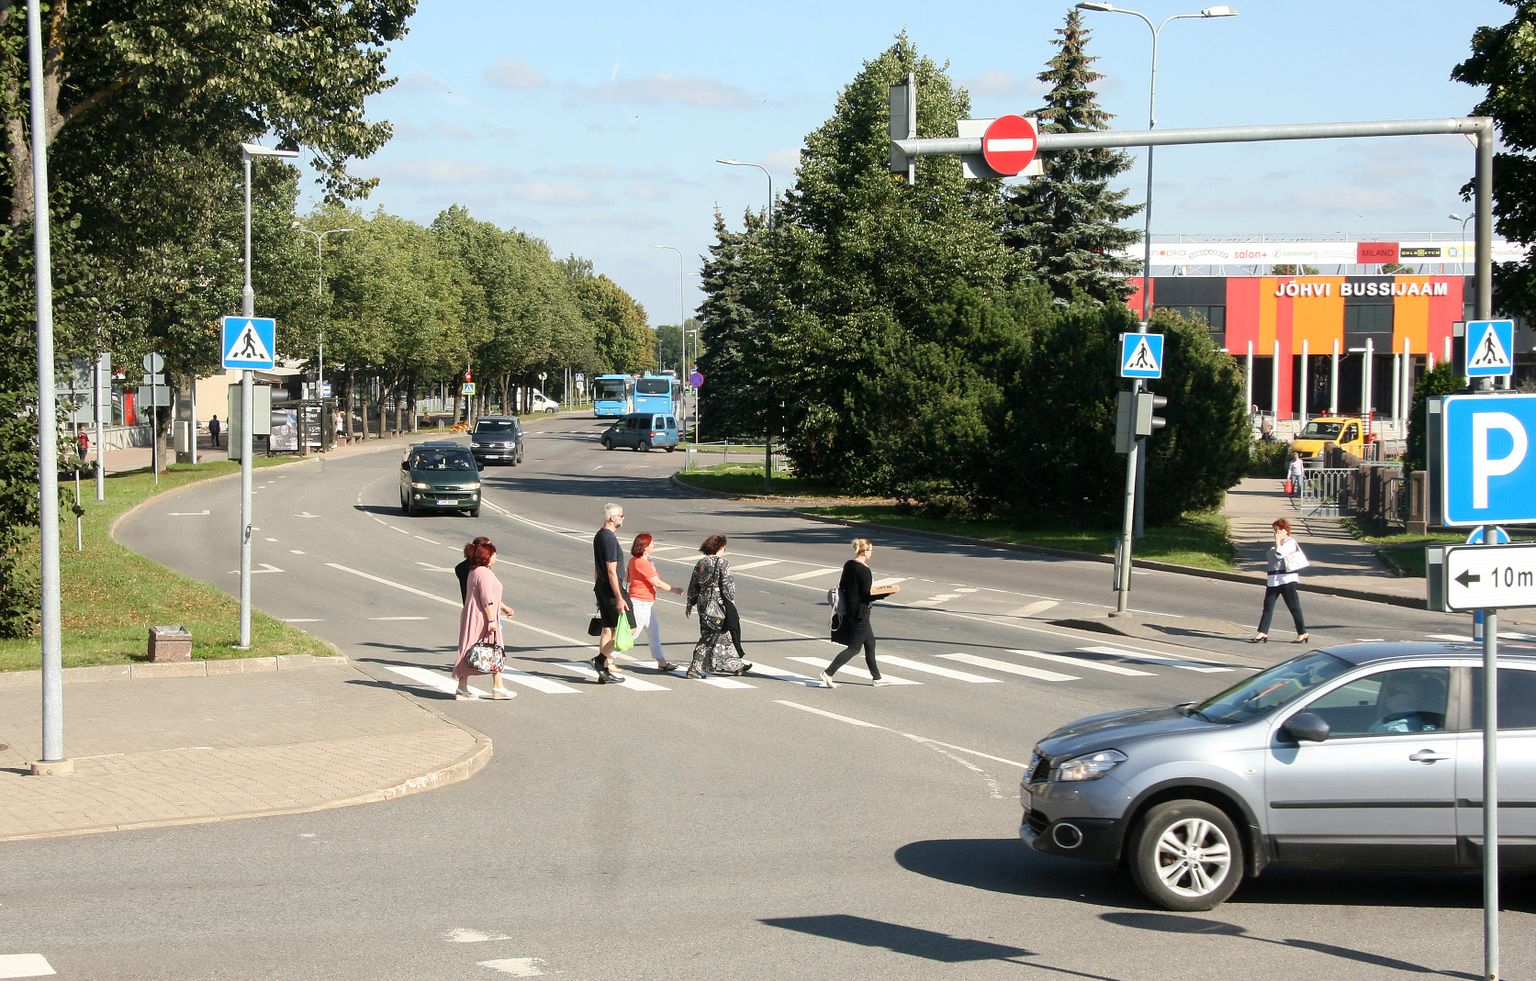 Нарвское шоссе - одна из наиболее интенсивно используемых основных улиц Йыхви, и, несмотря на капитальный ремонт 20-летней давности, снова требует реновации.